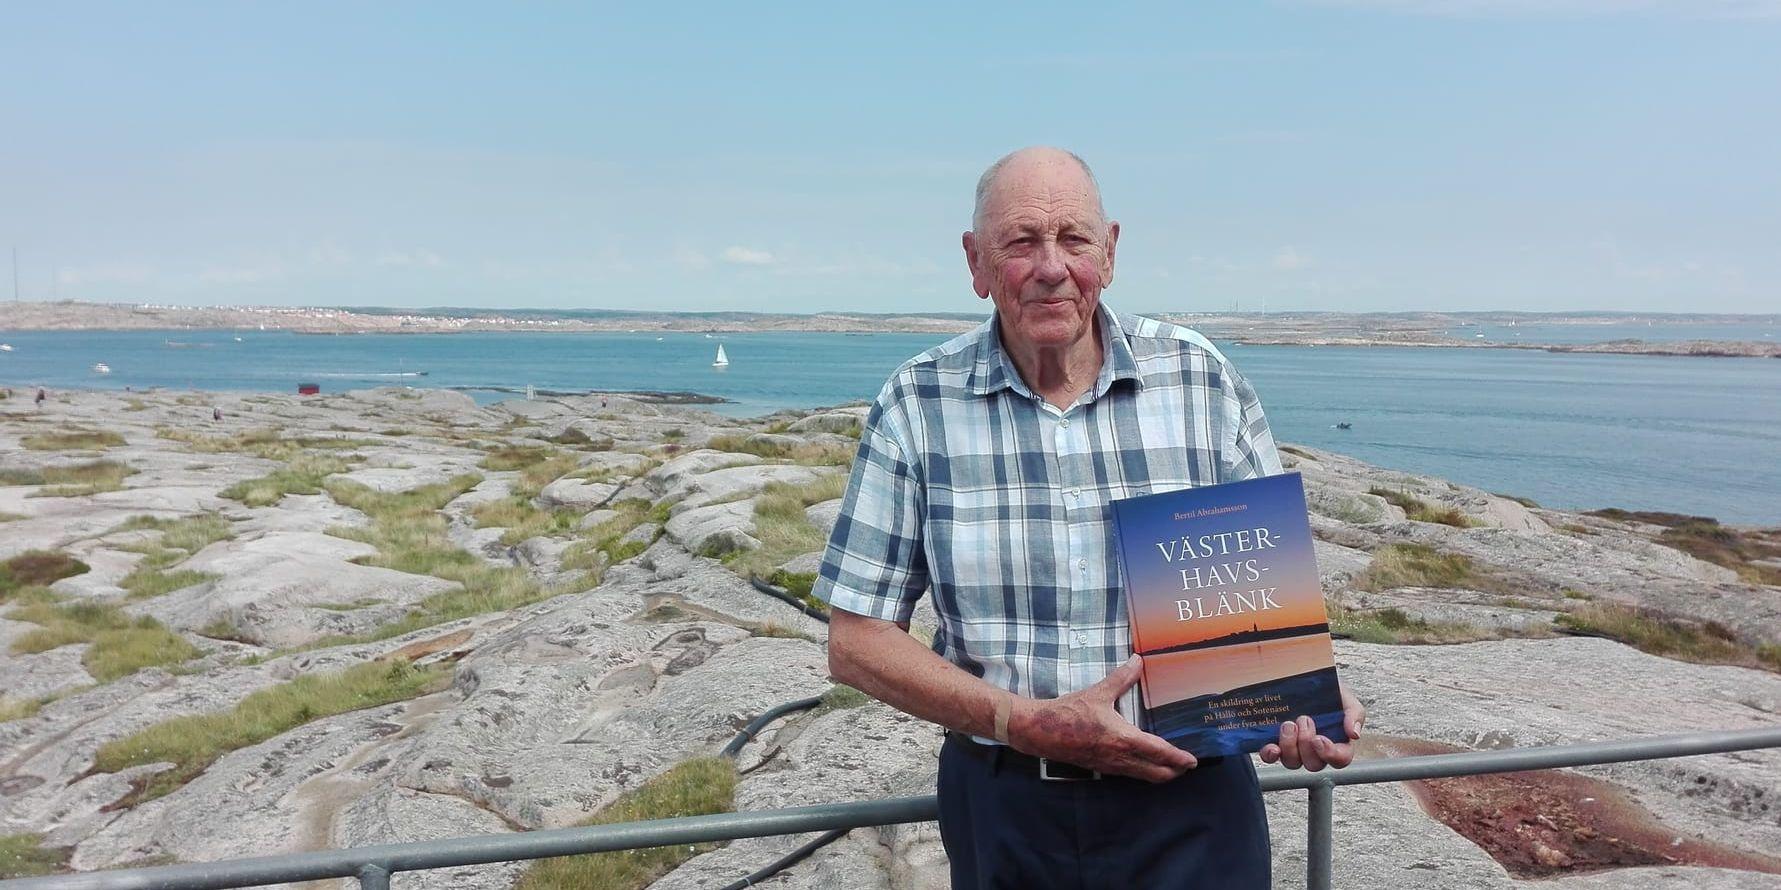 Den slipade politikern Bertil Abrahamsson debuterar som författare vid 85 års ålder. I boken "Västerhavsblänk" berättar han om livet på Hållö. Ön har spelat stor roll i krig och fred, men har inte fått så stor litterär uppmärksamhet sedan Evert Taube var här och skrev sina populära visor.